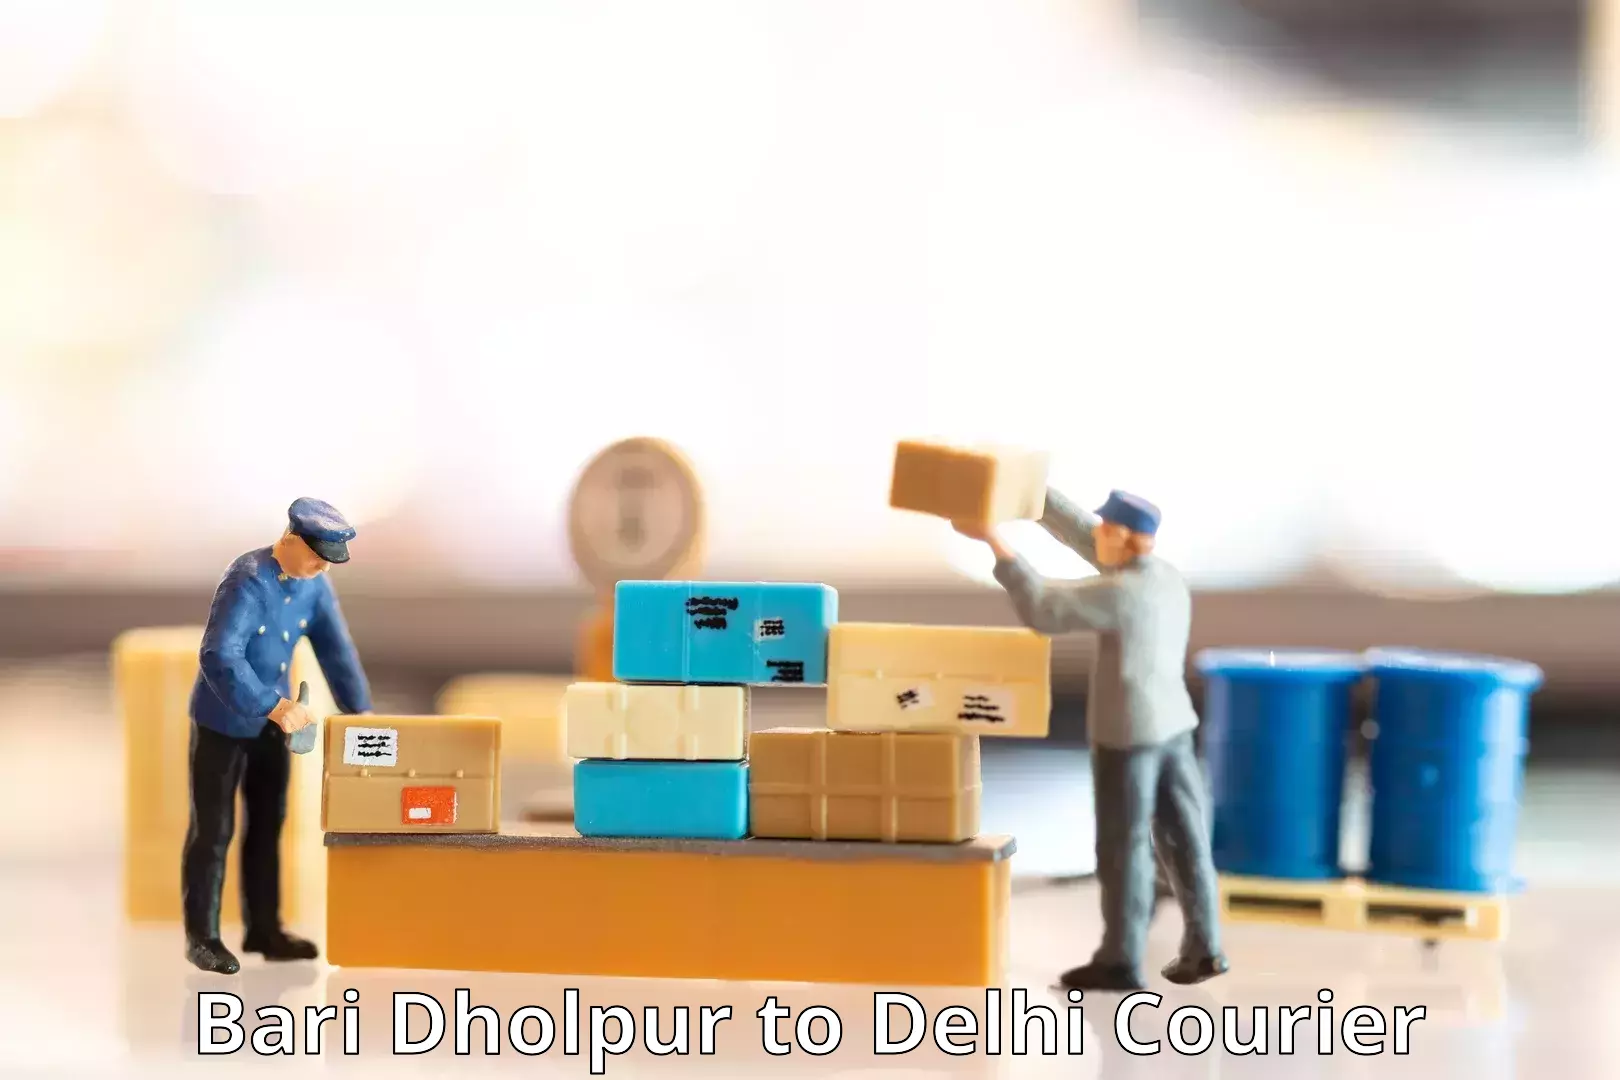 High-capacity parcel service Bari Dholpur to East Delhi